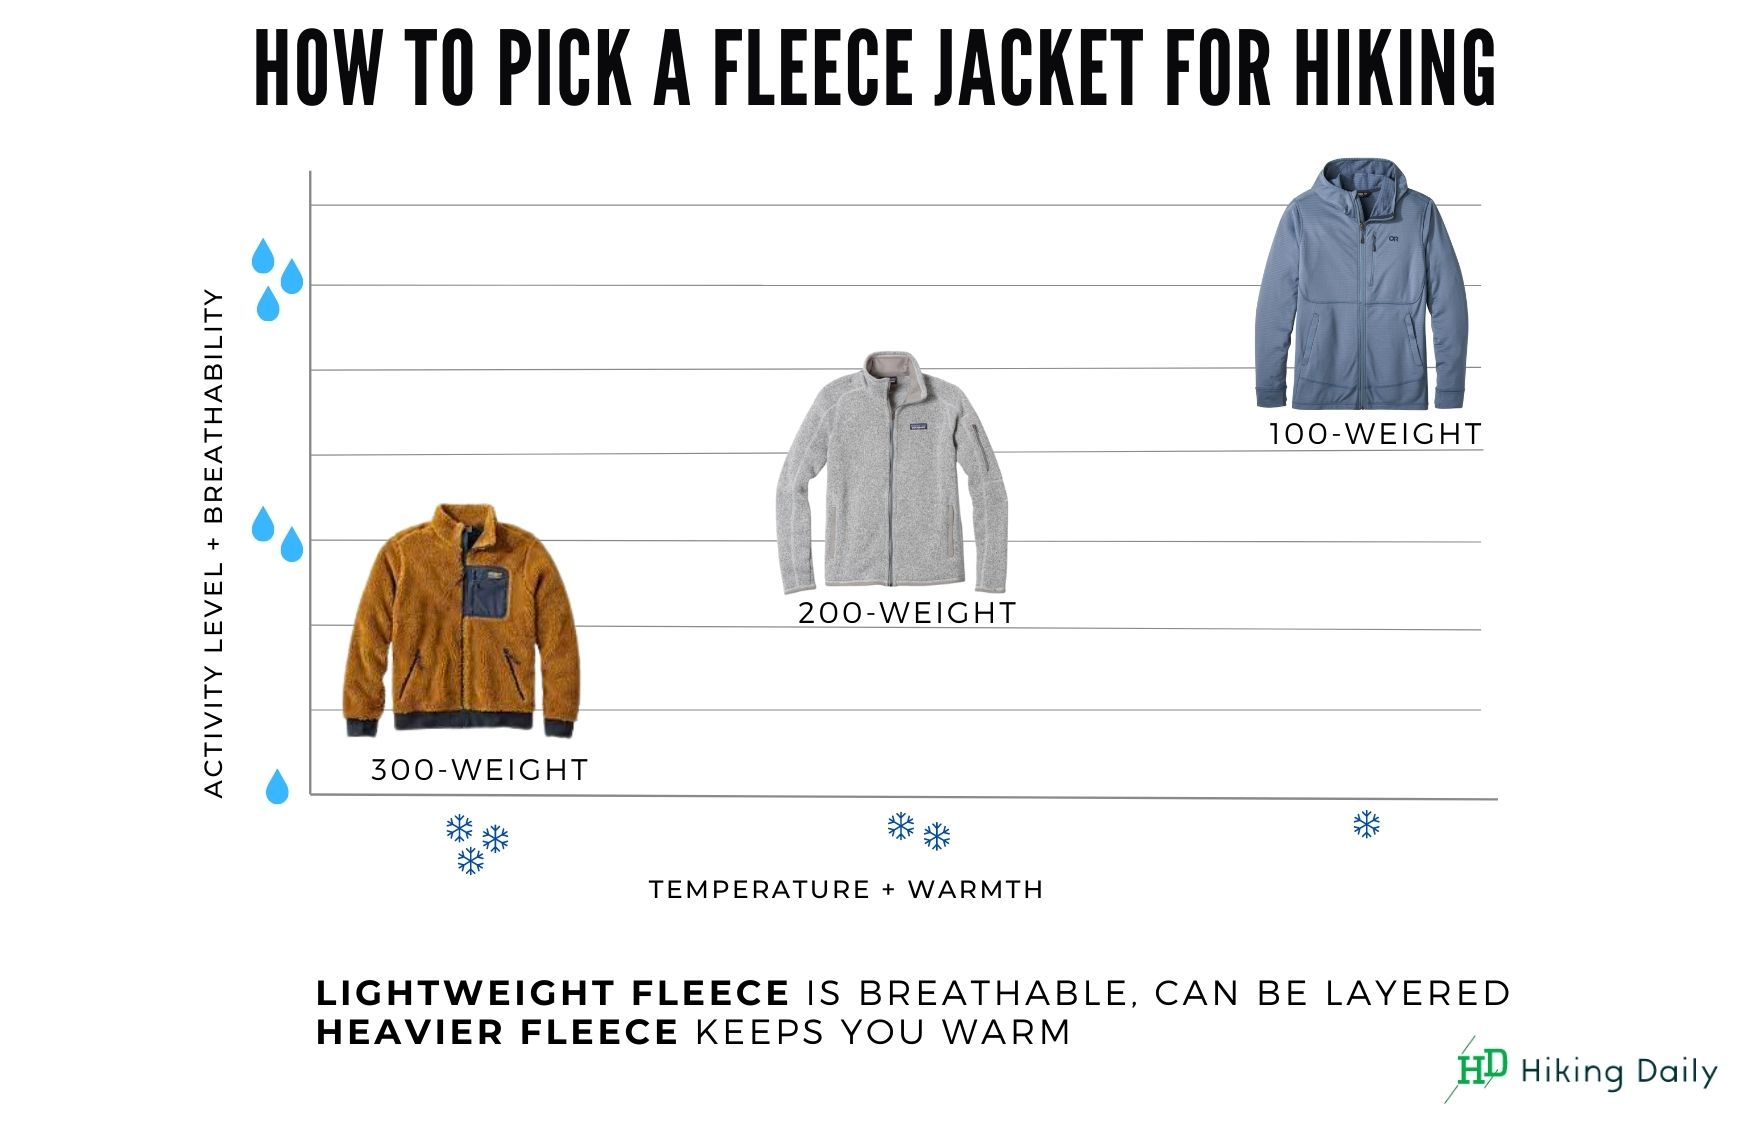 Fleece jacket breathability